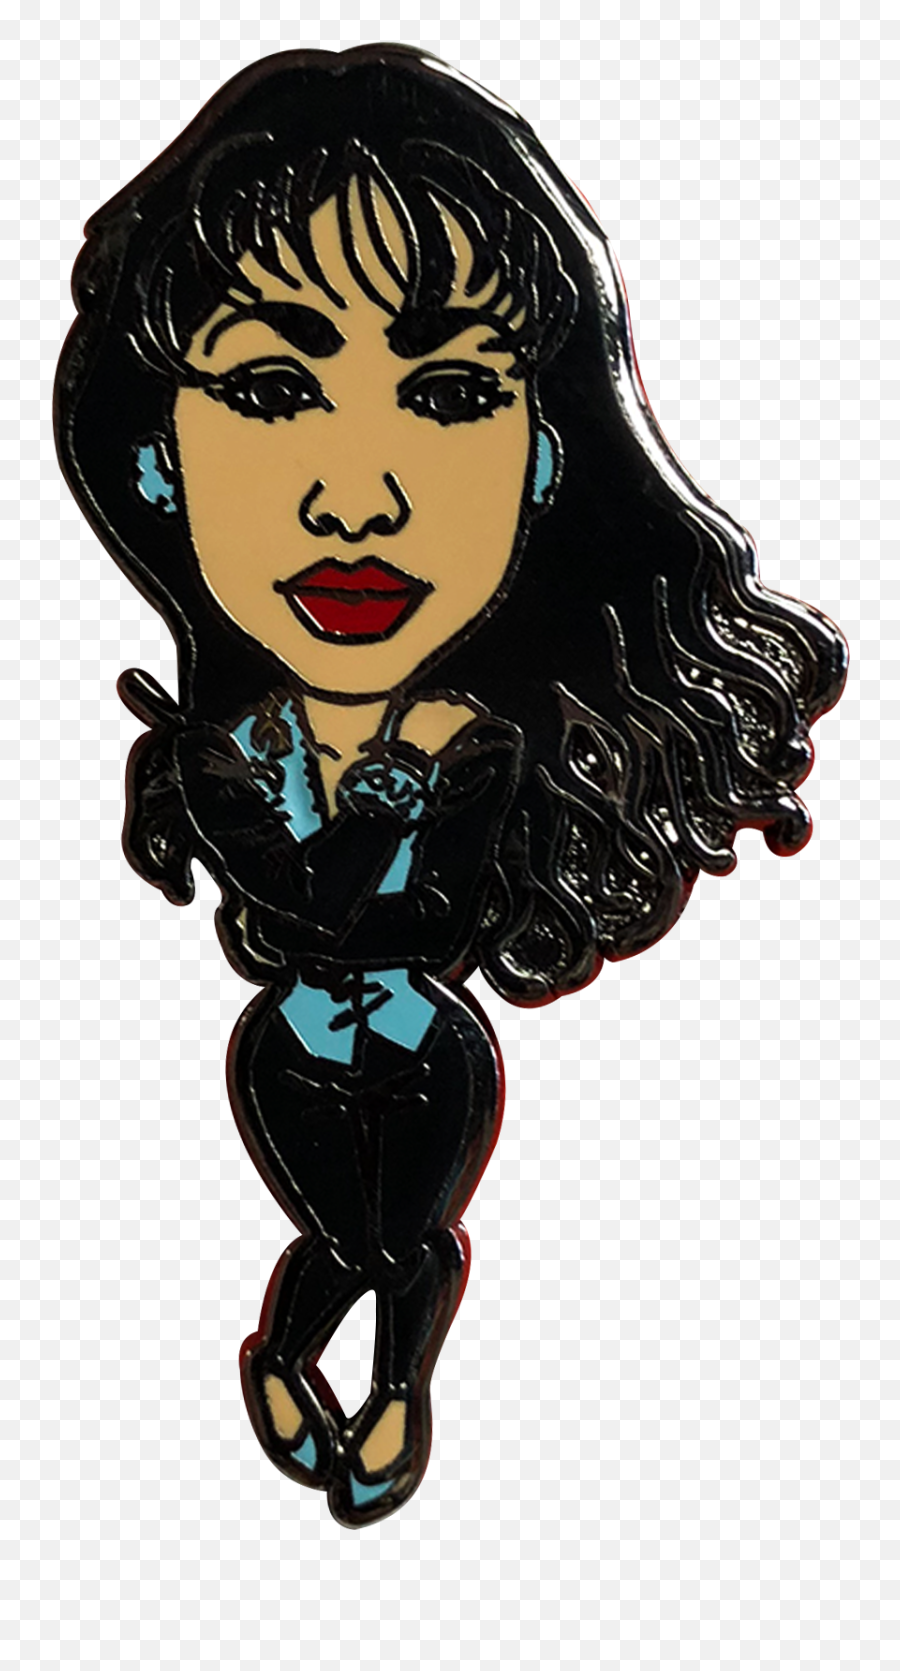 Selena Quintanilla Drawing - Illustration Emoji,Selena Emoji